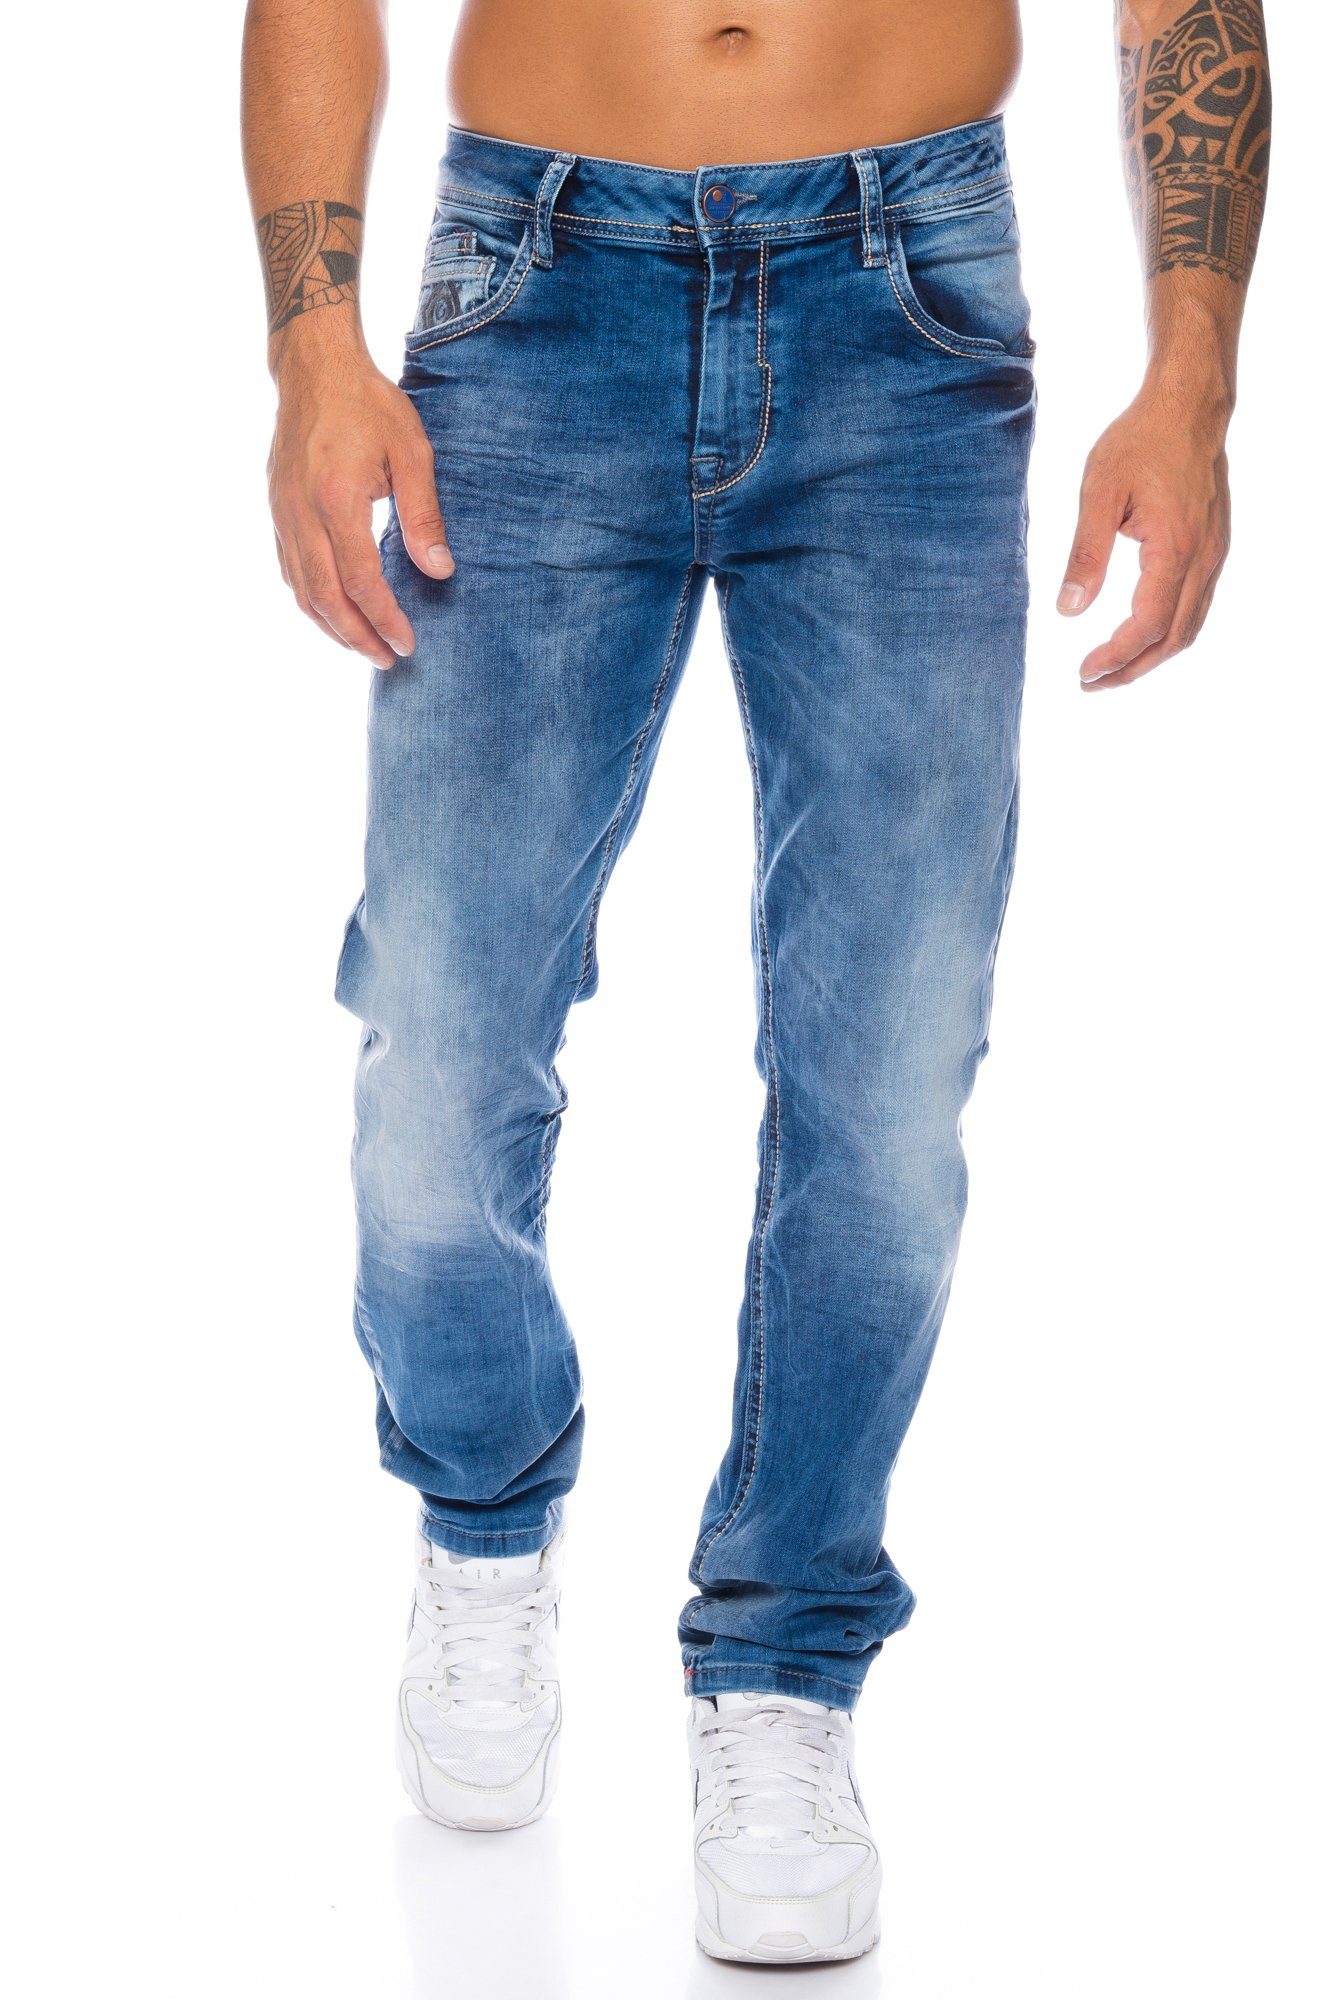 Cipo & Baxx Slim-fit-Jeans Herren Jeans Hose im casual Look mit dezenten dicken Nähten Dezente dicke Nähte